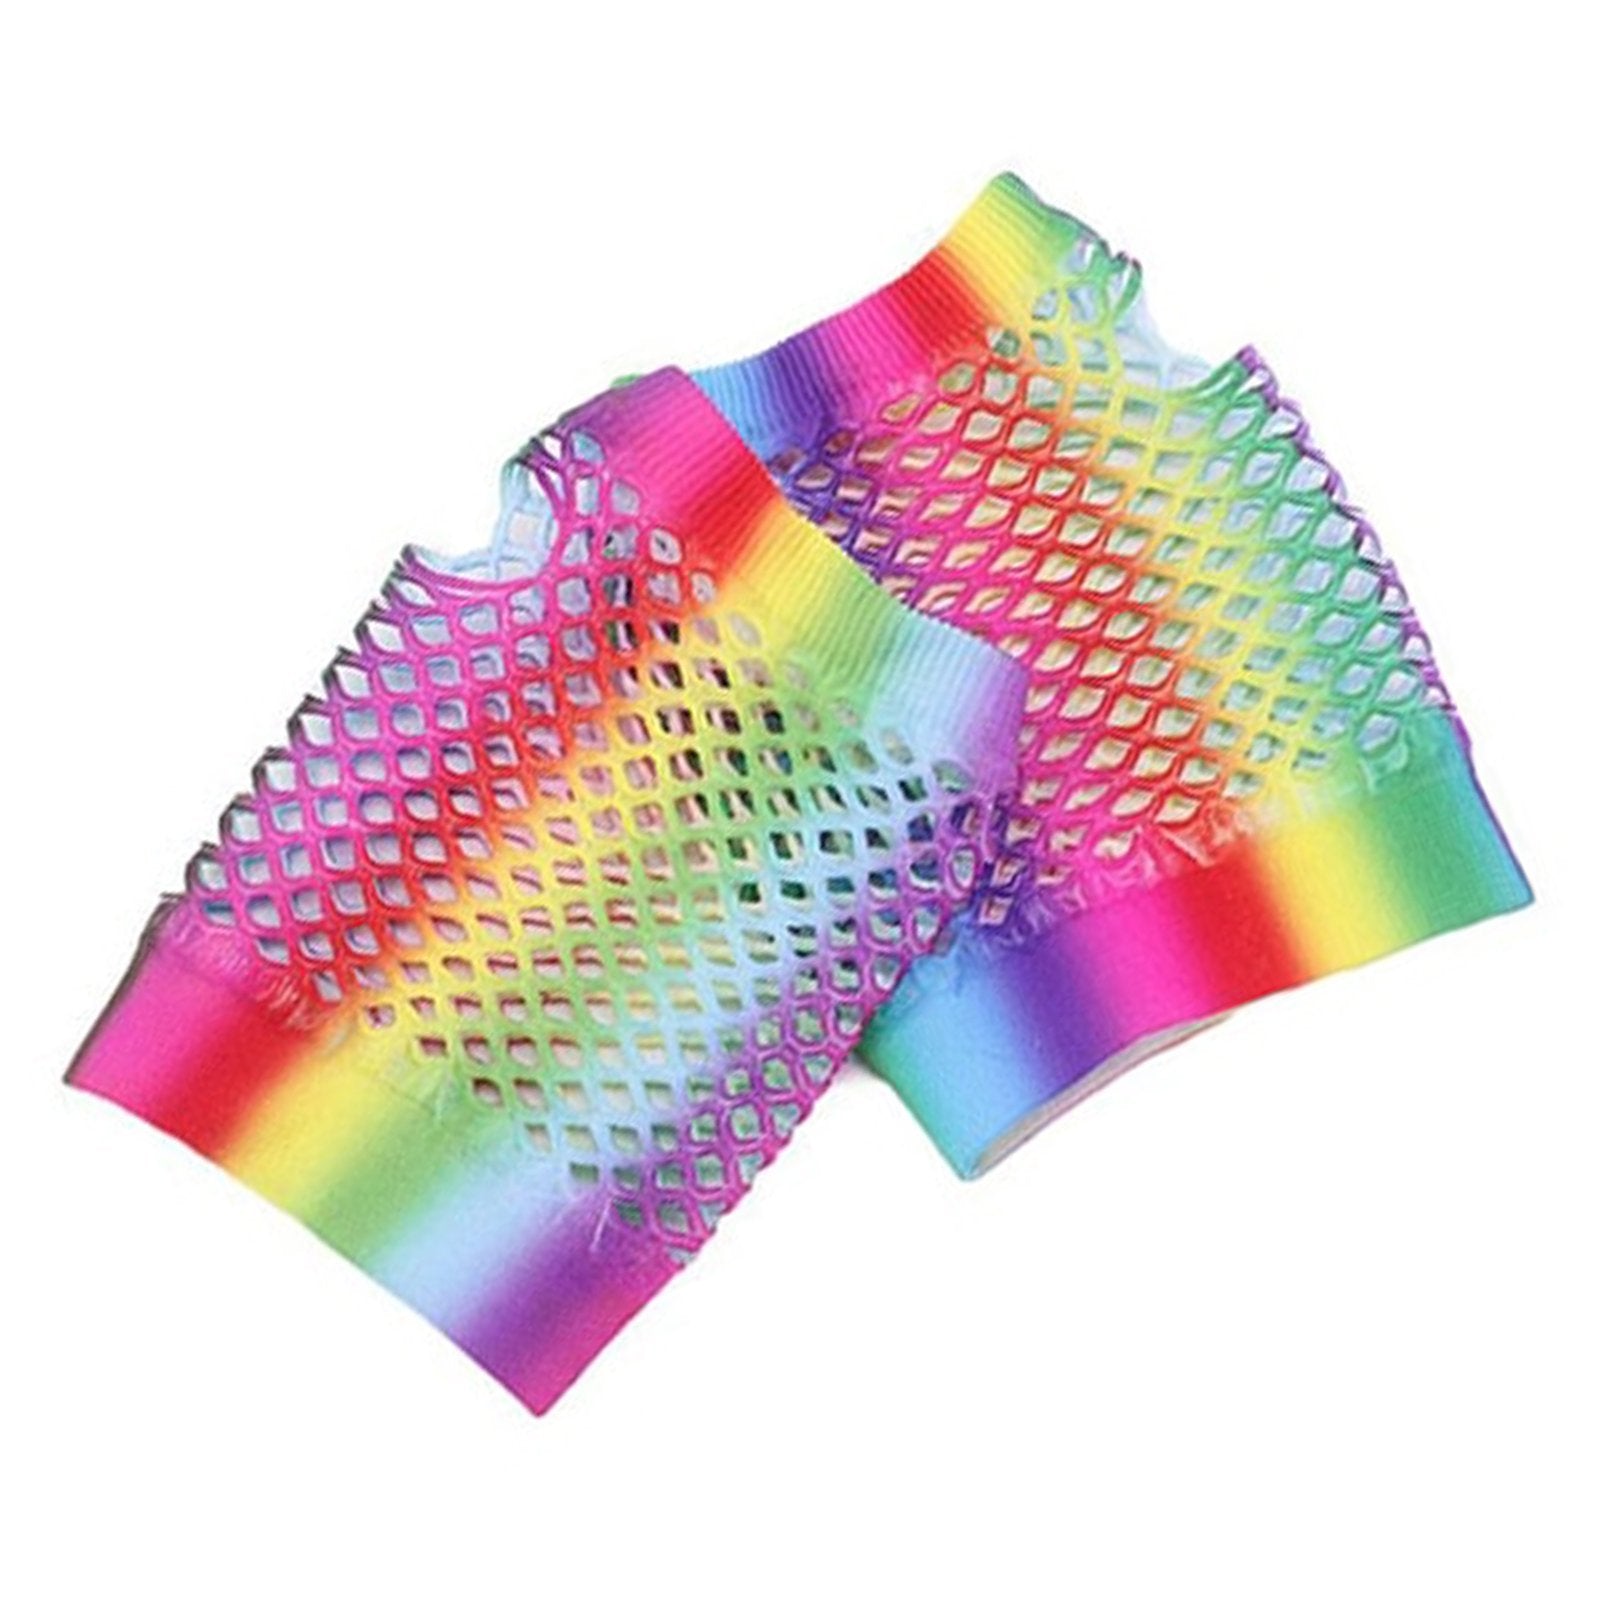 Gloves Fishnet Fingerless Rainbow